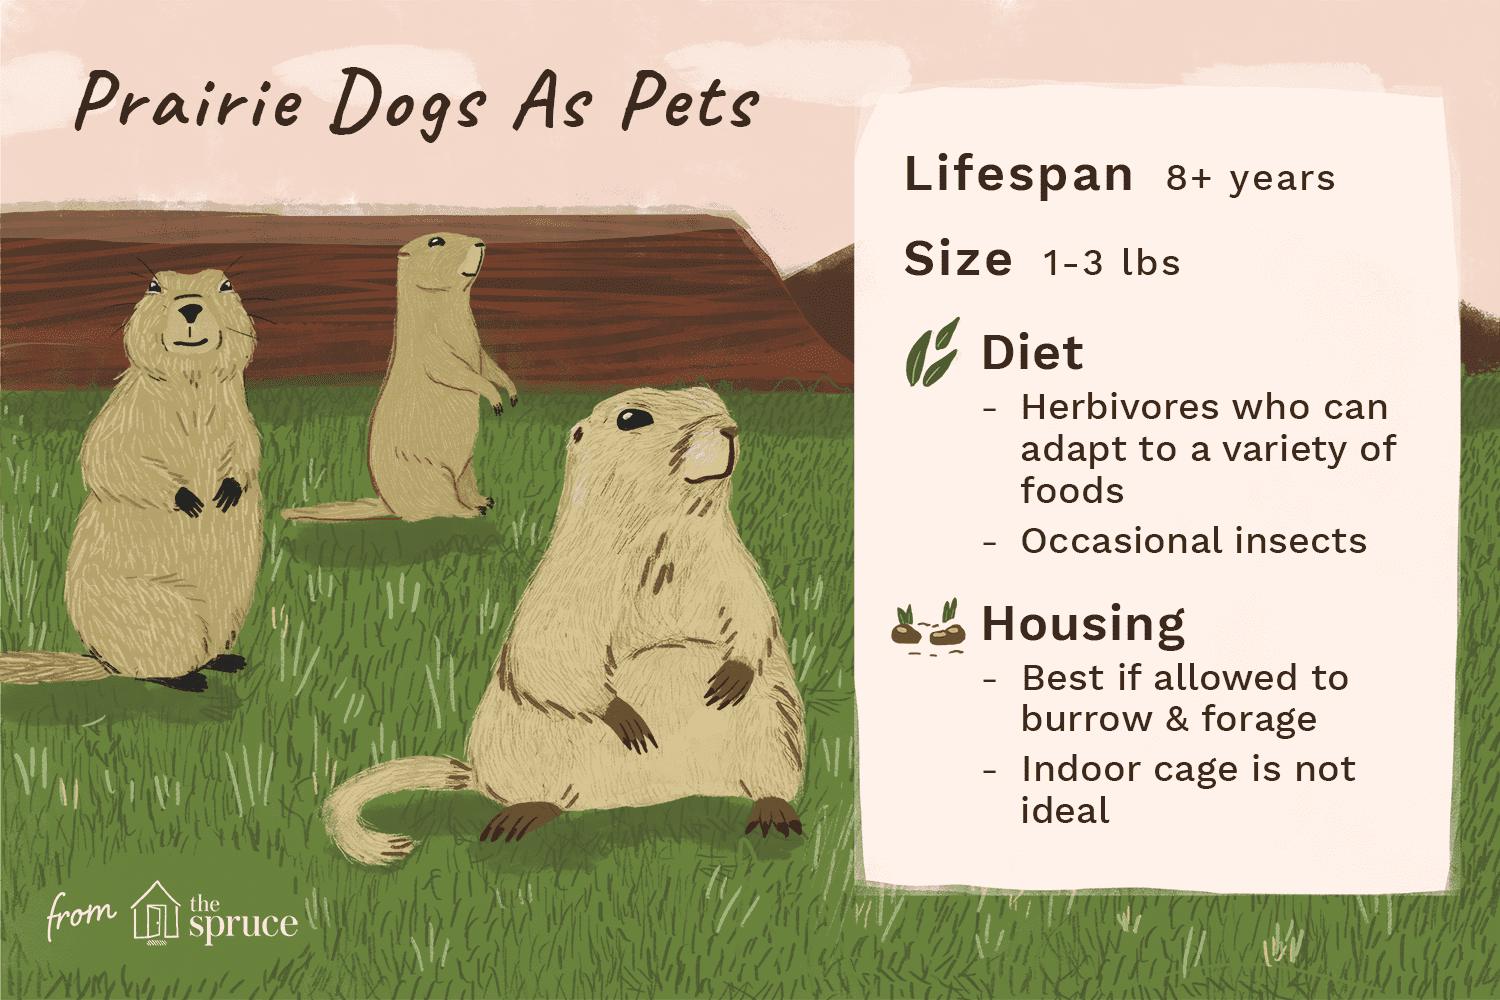 Devez-vous garder un chien de prairie comme animal de compagnie ?